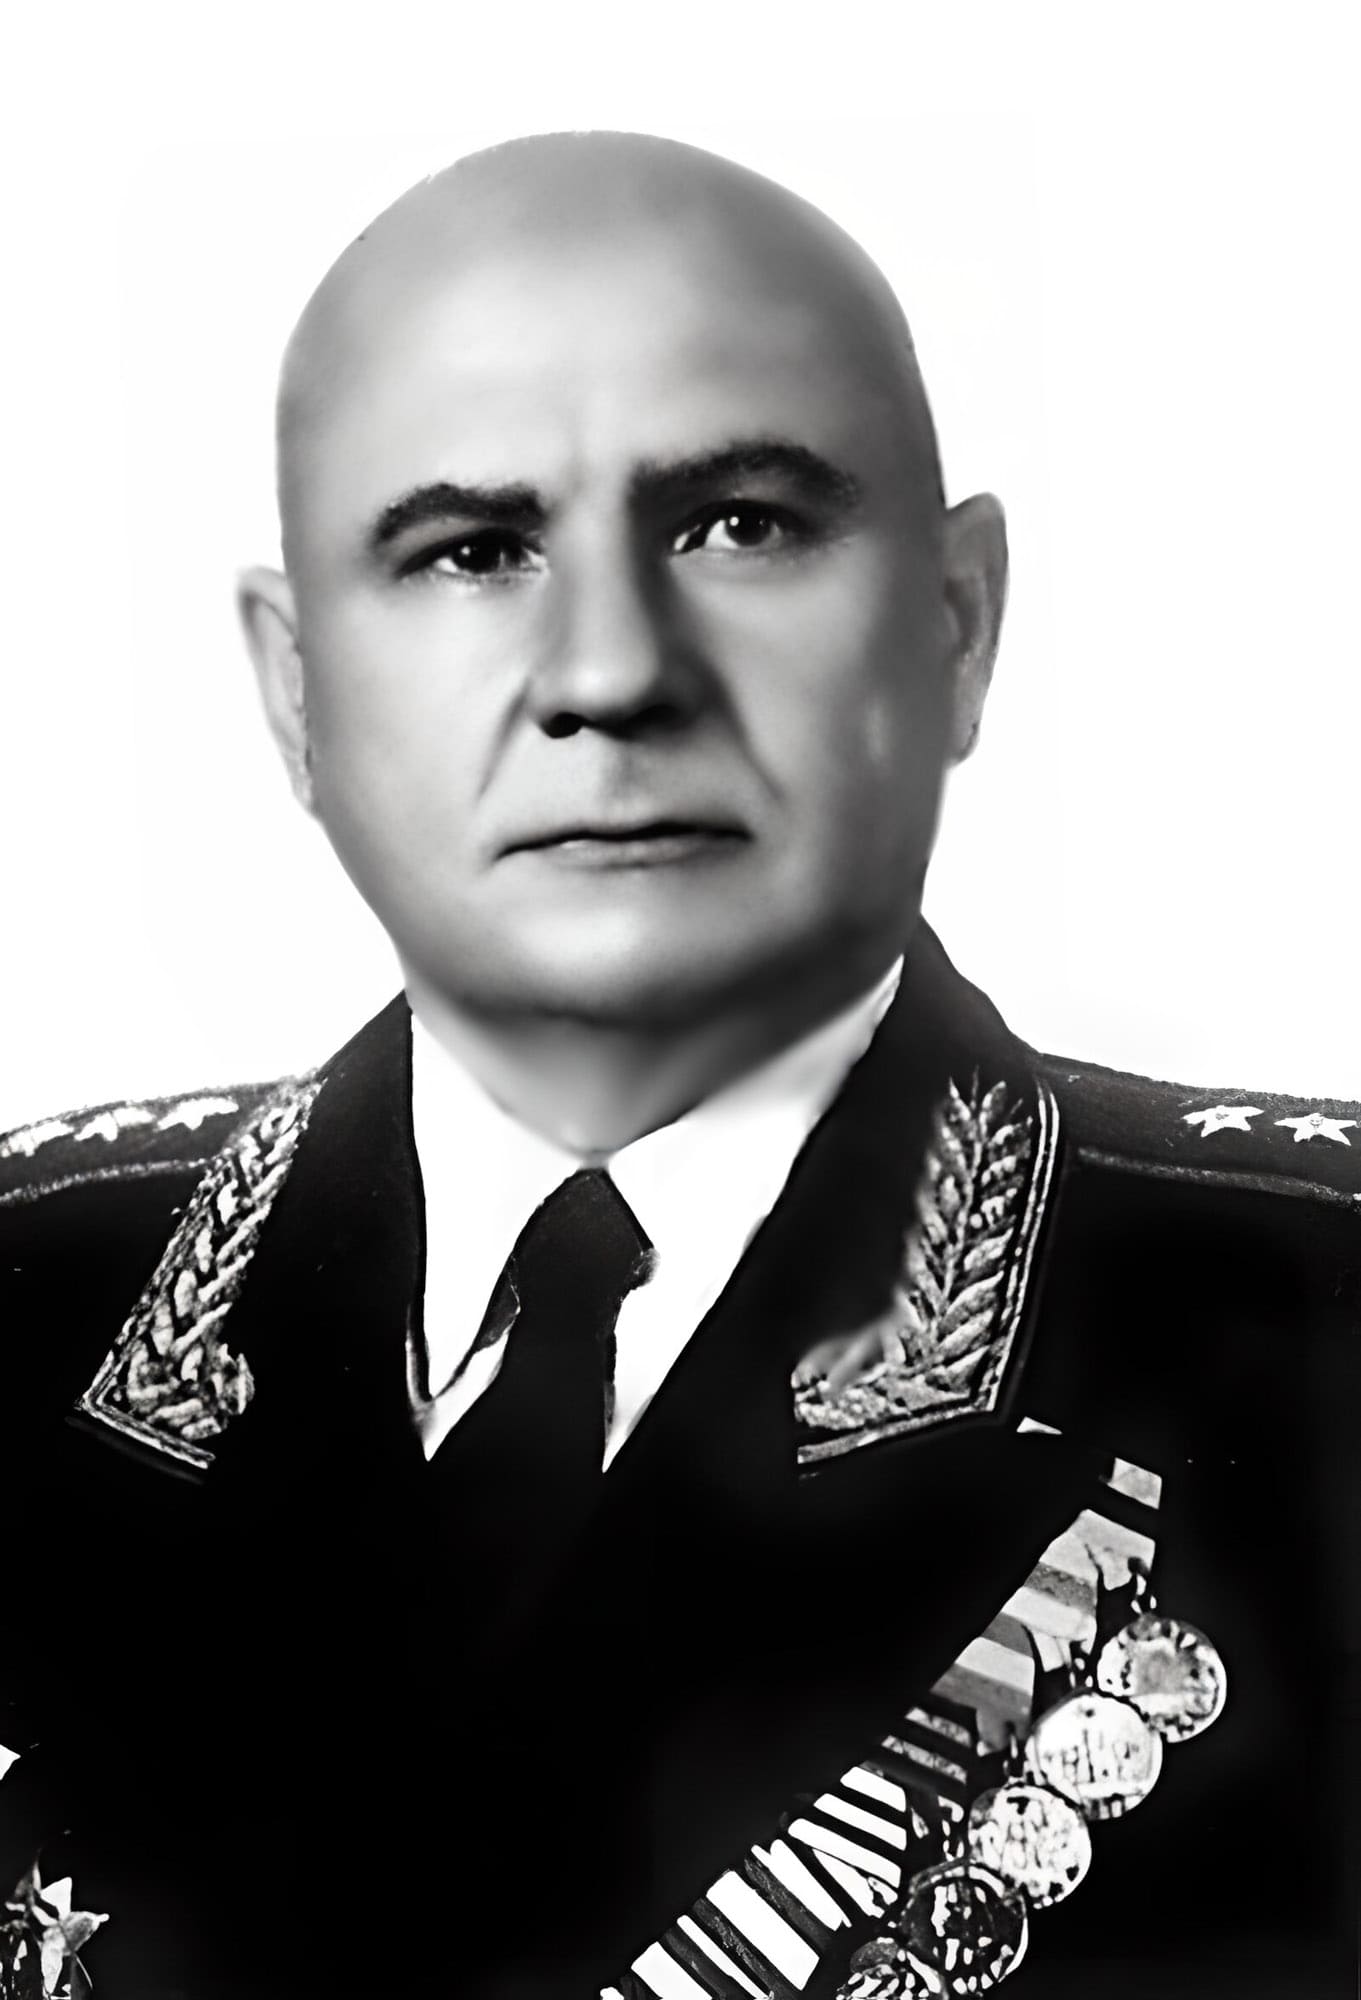 Толстиков Олег Викторович - командир 9-го сак, генерал-майор авиации